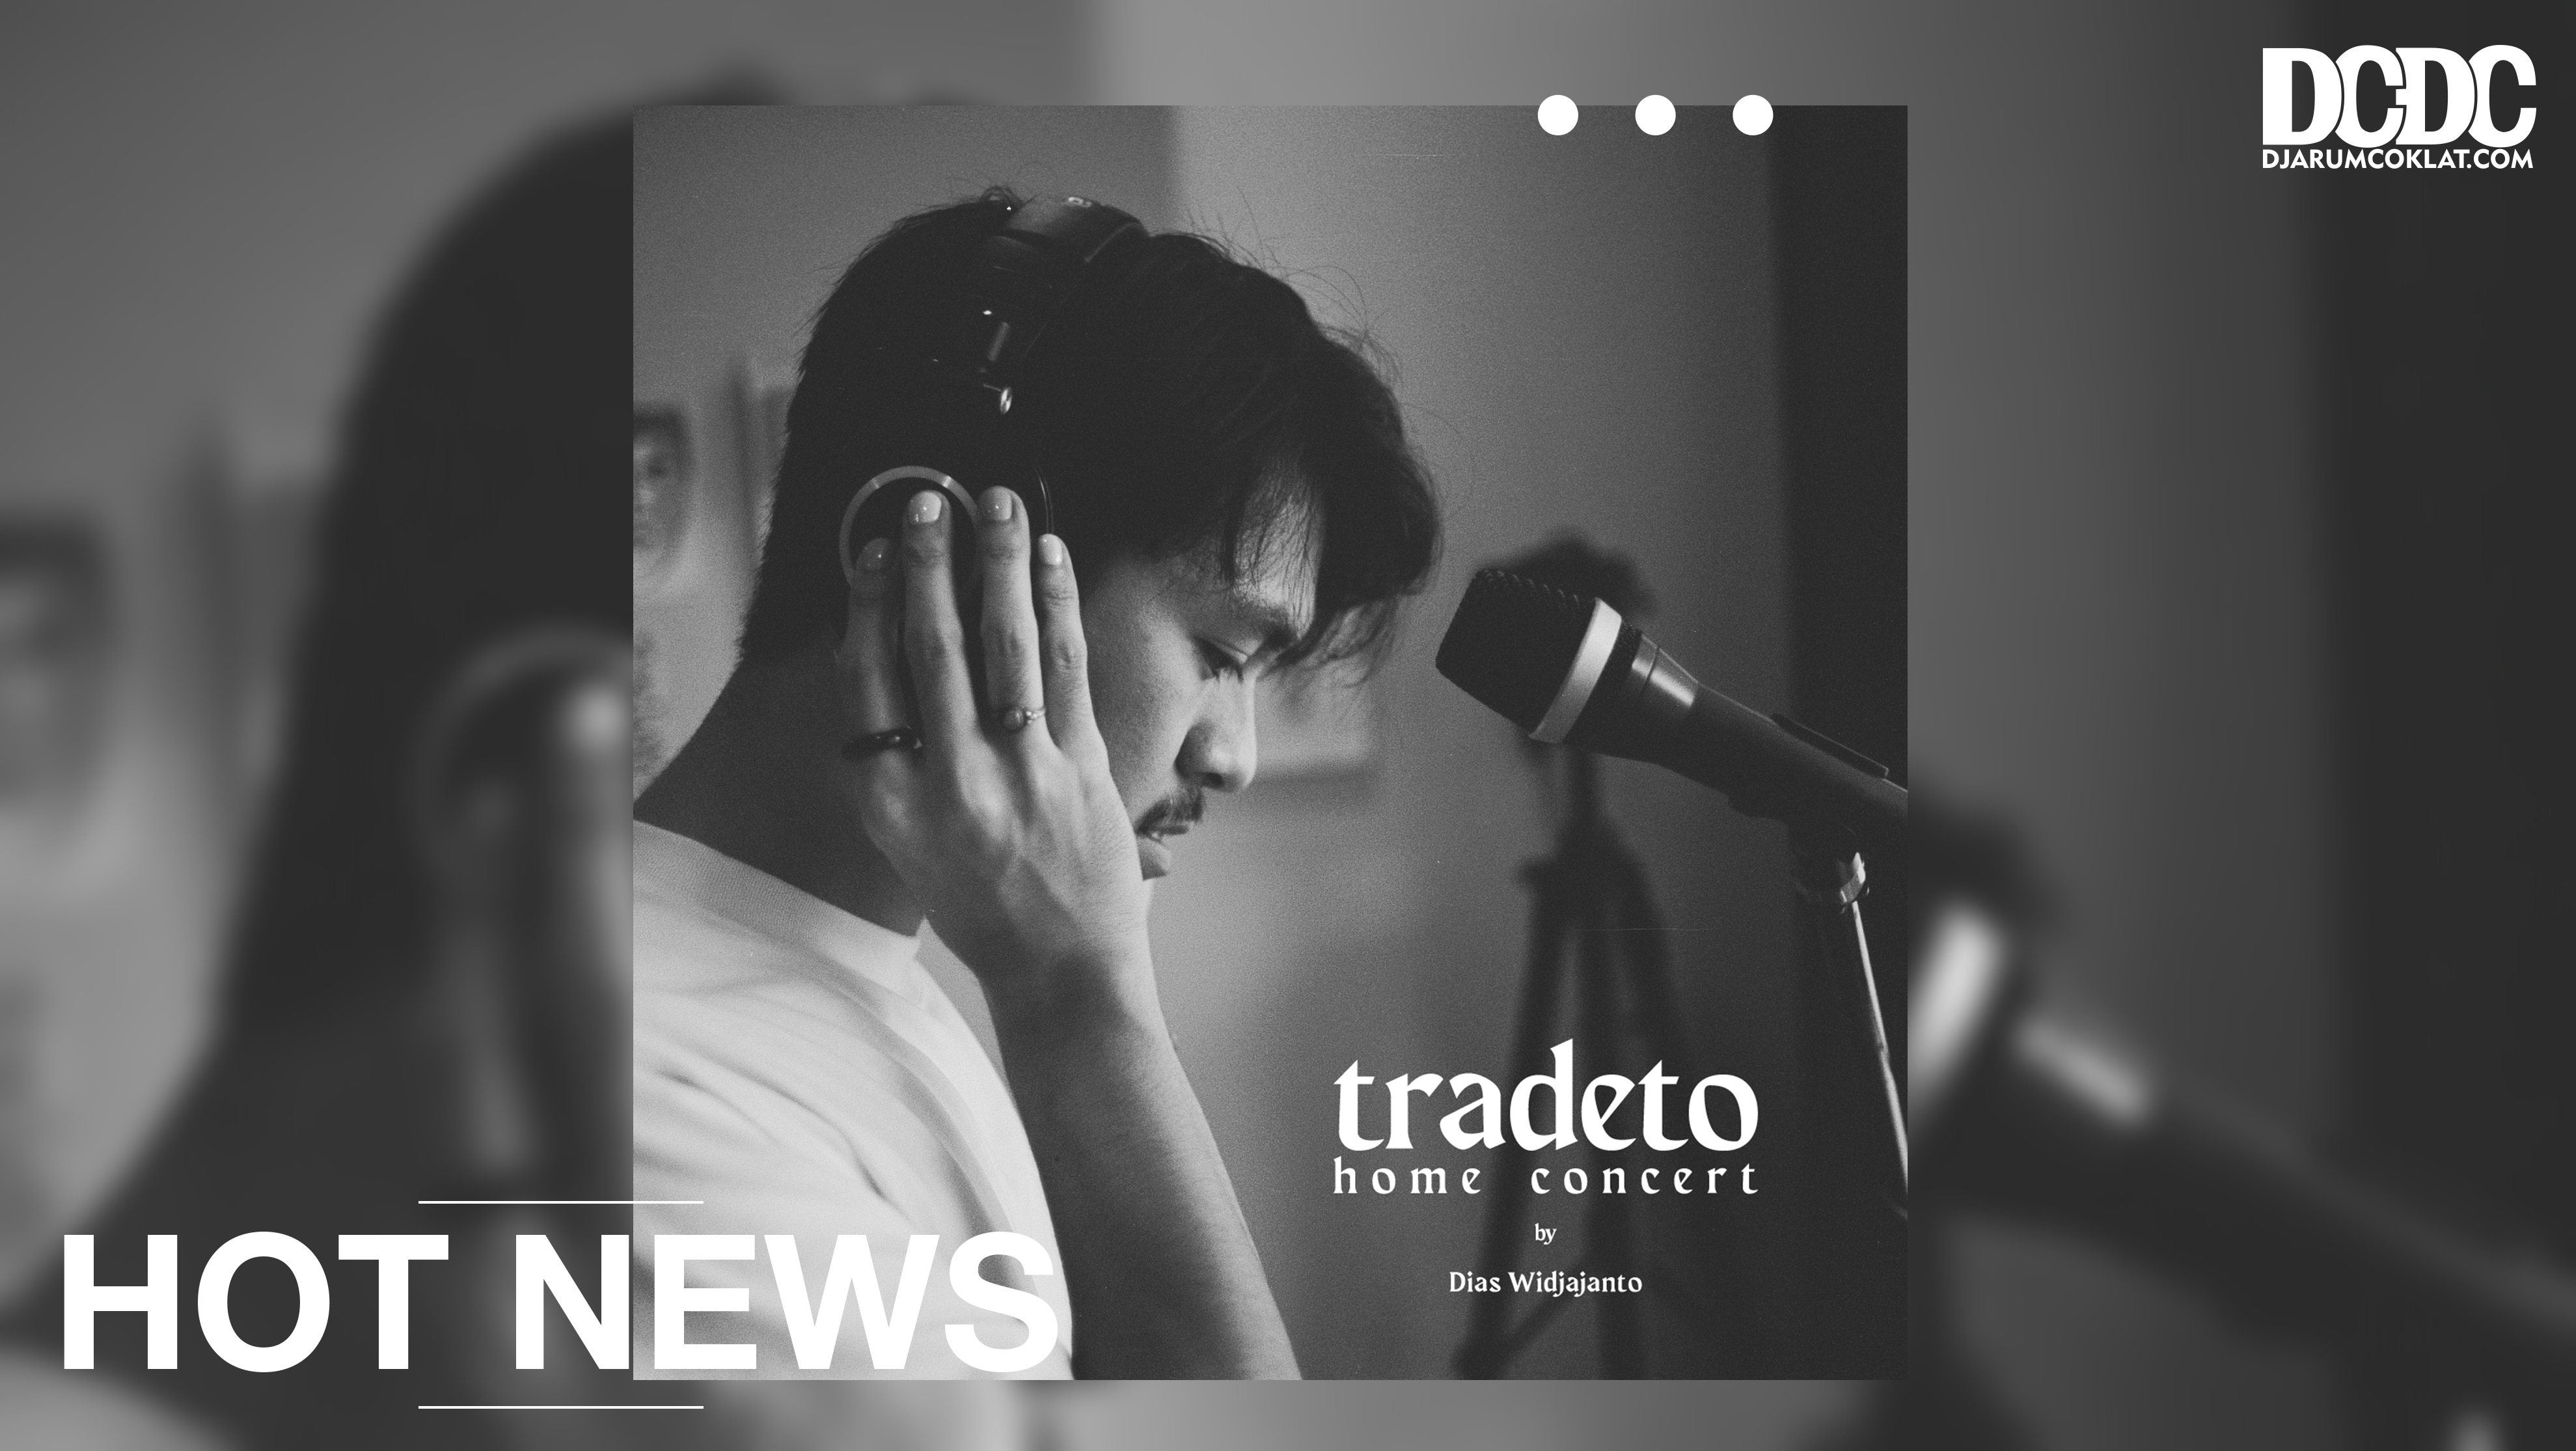 Sedikit Cerita Sehat dari Tradeto Home Concert 2020